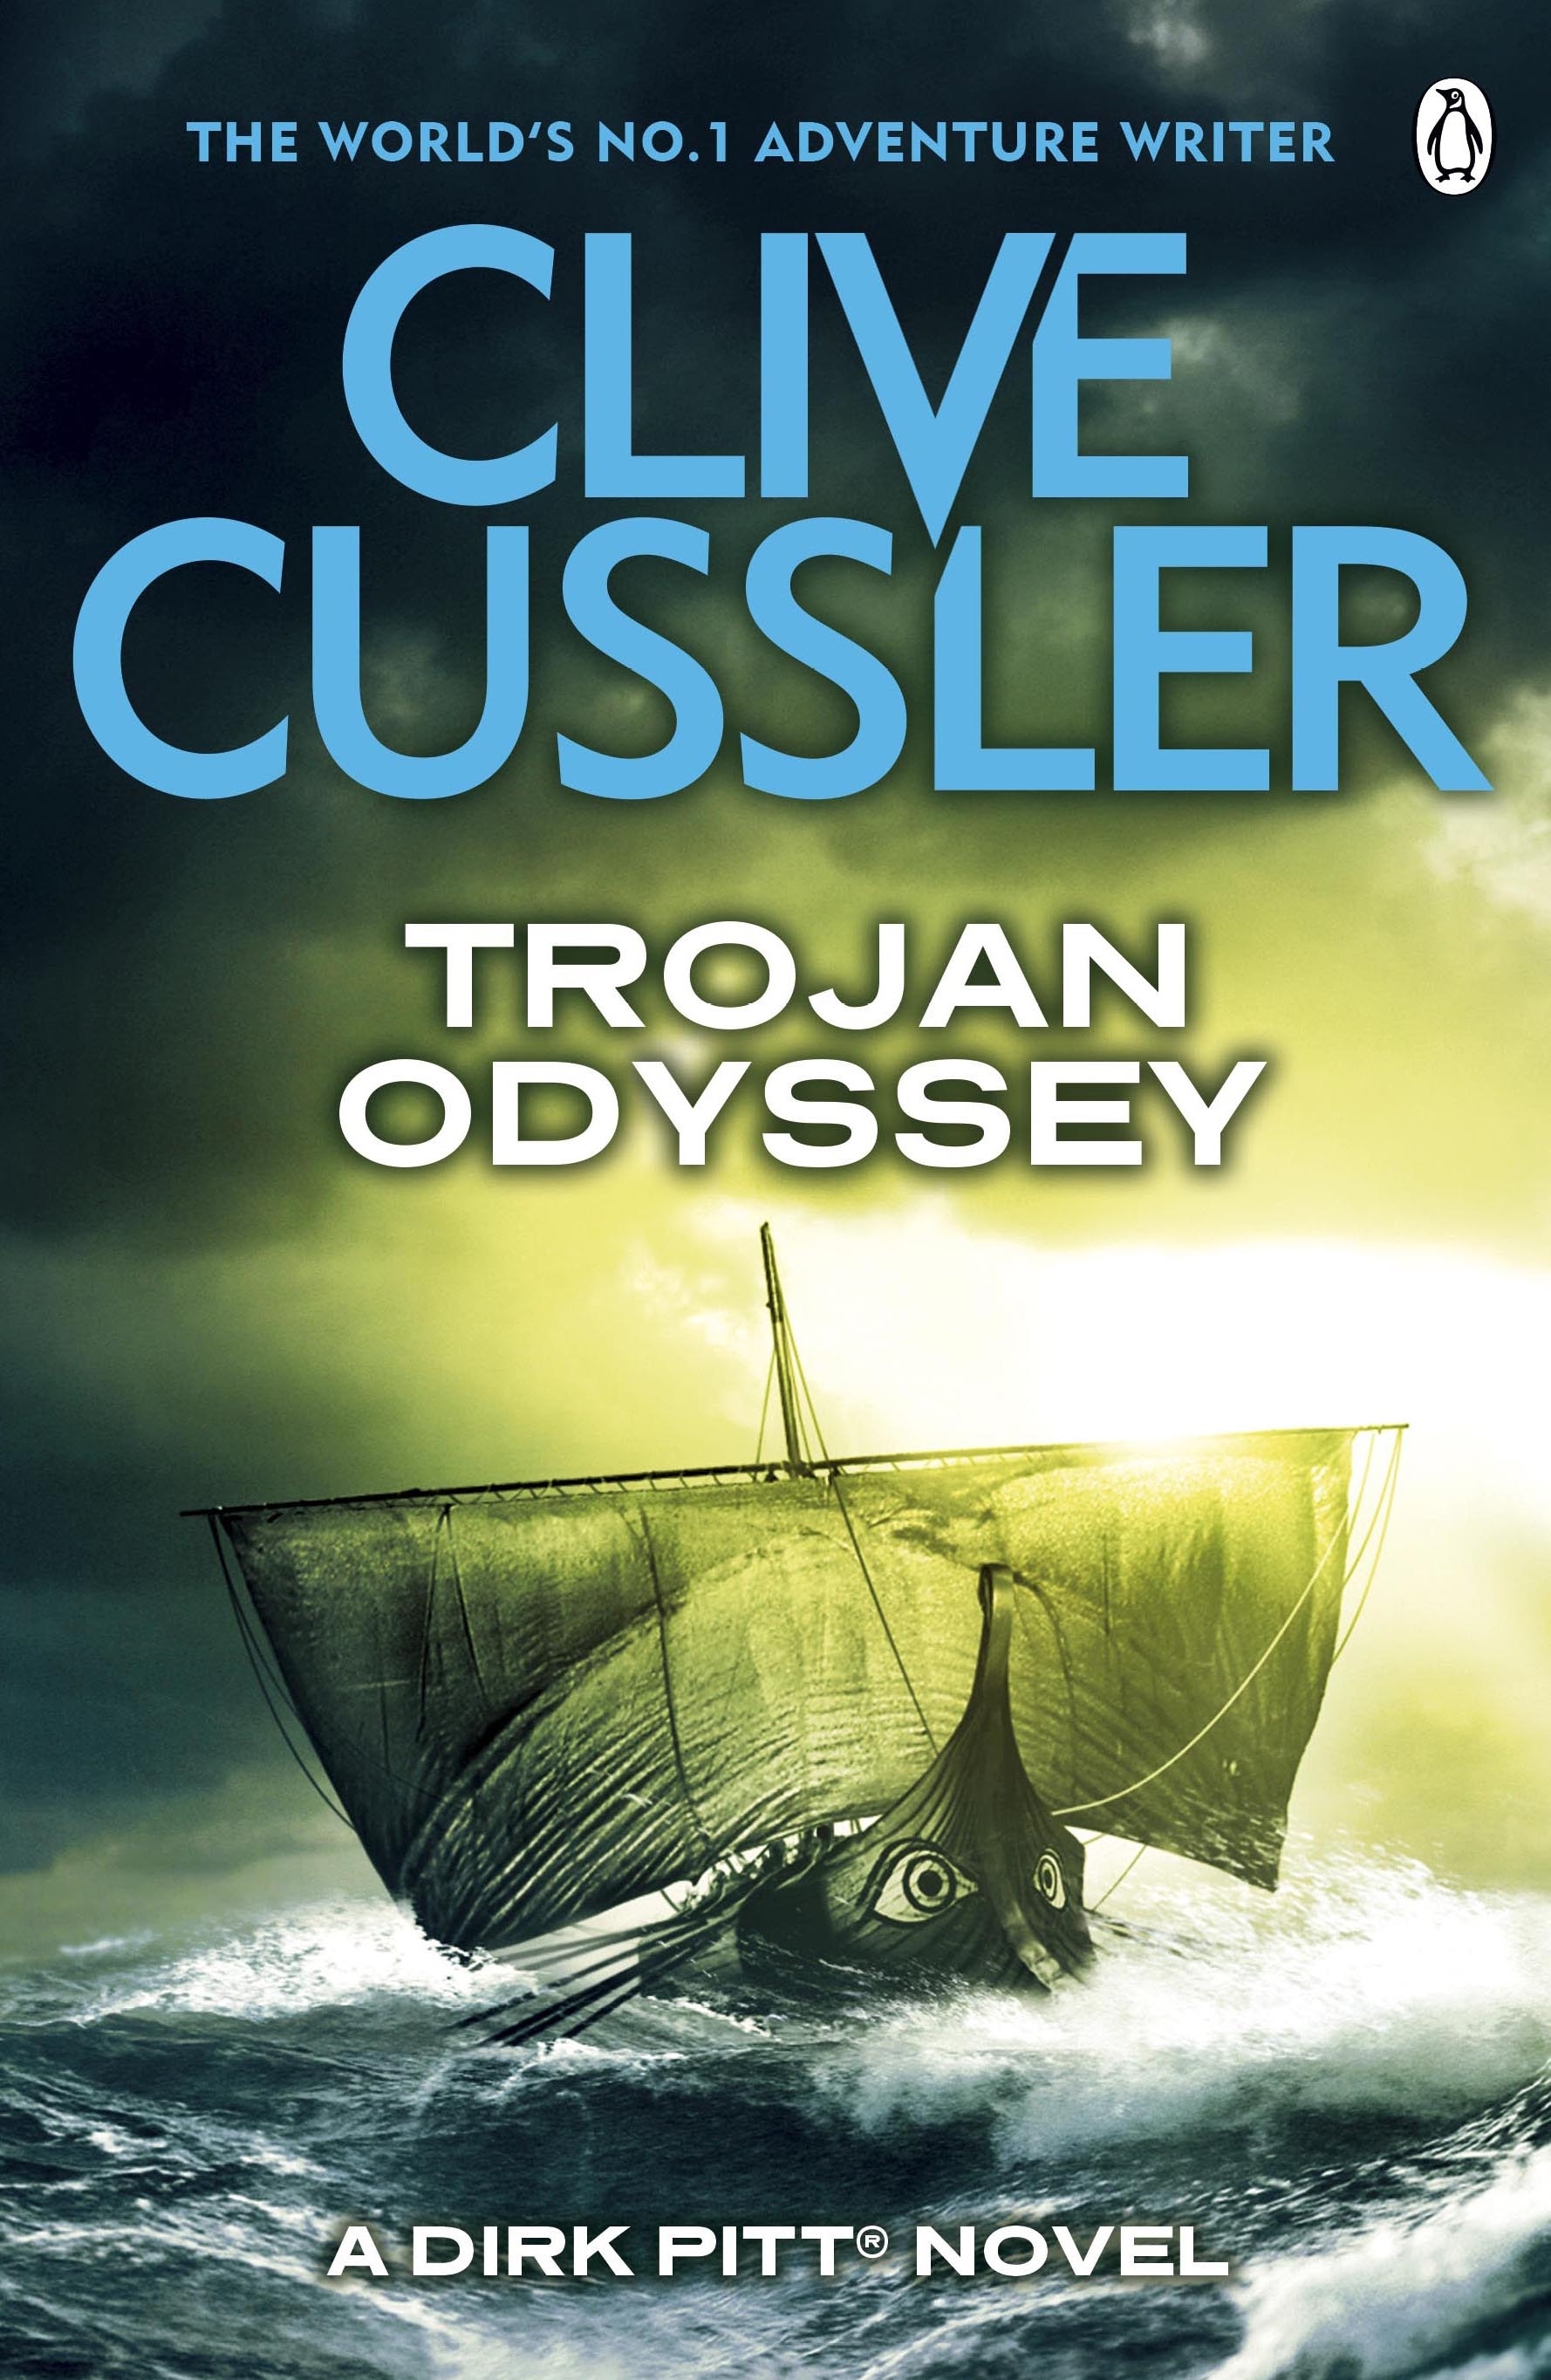 Trojan Odyssey bestseller novel